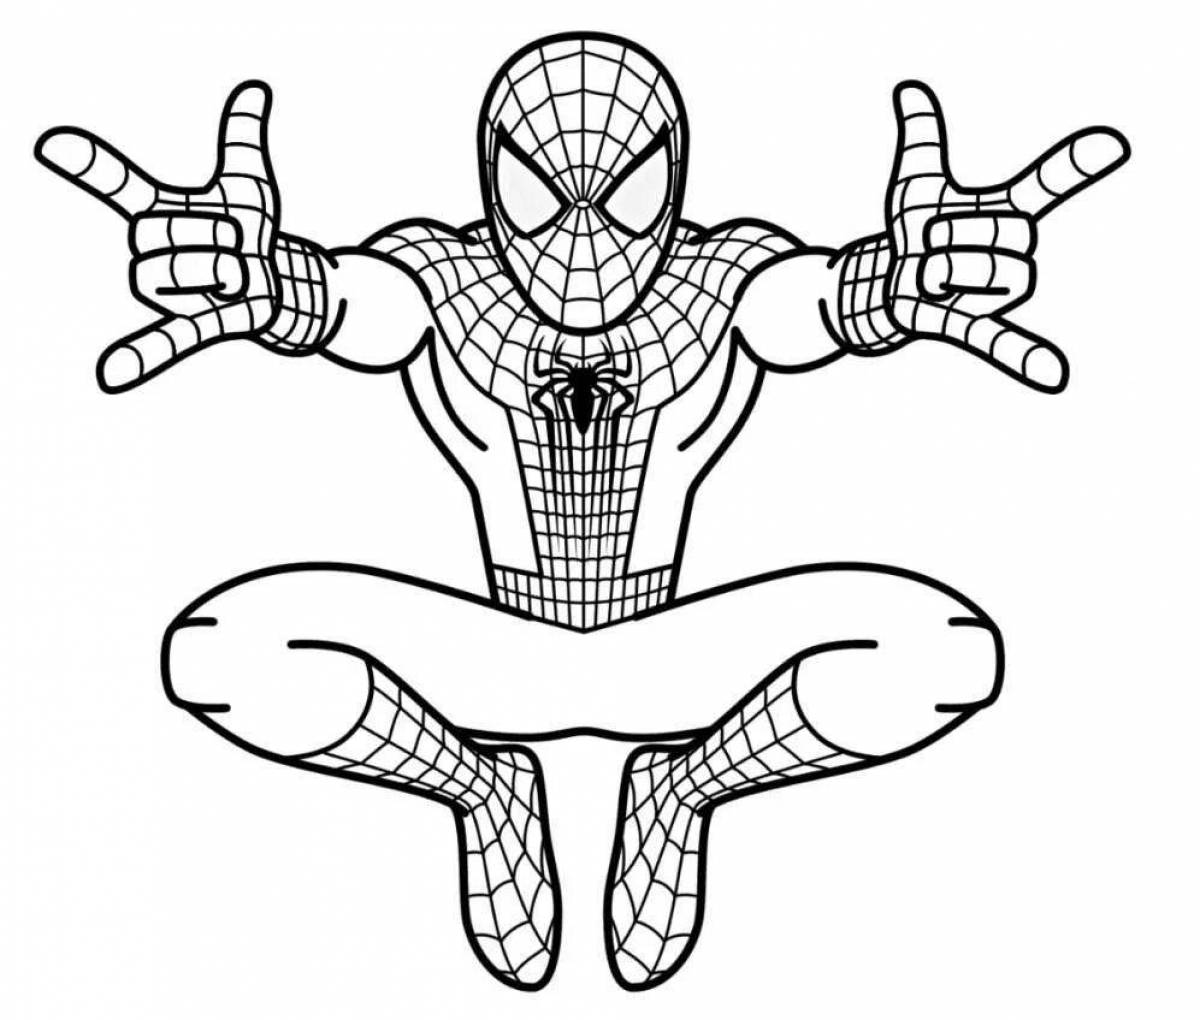 Раскраски человек-паук распечатать бесплатно | Spider man